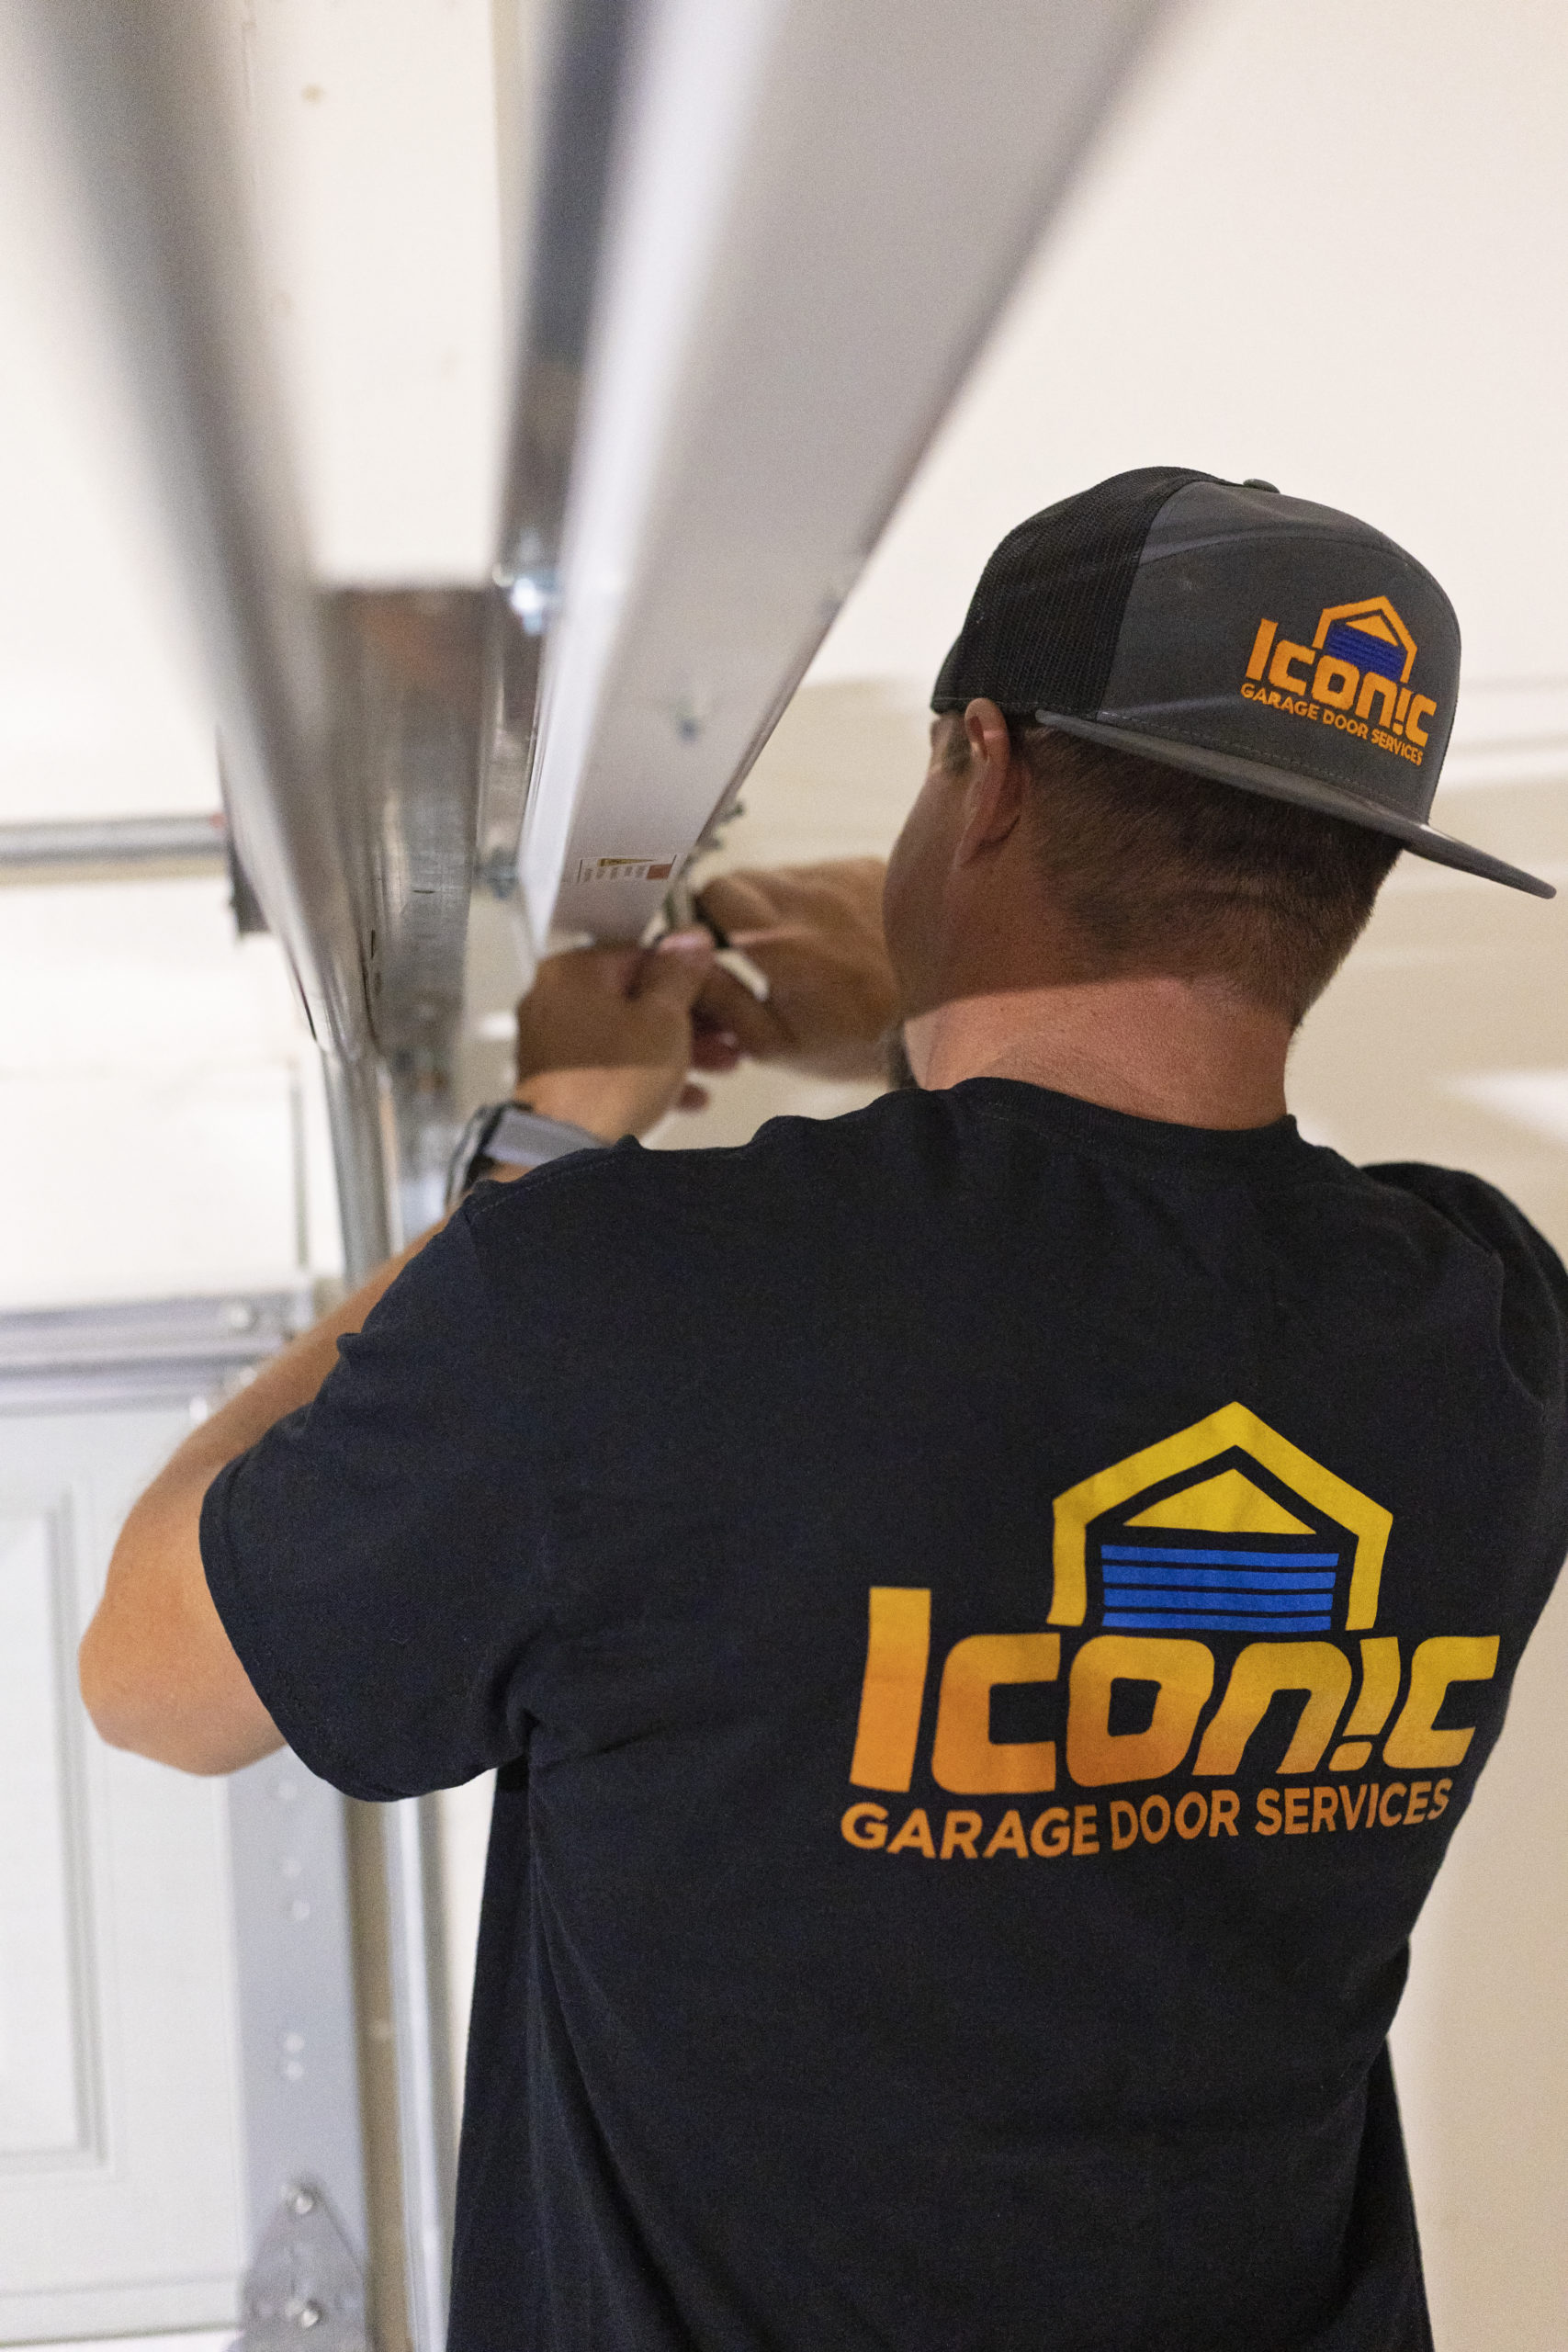 Iconic Garage Door Service repairman